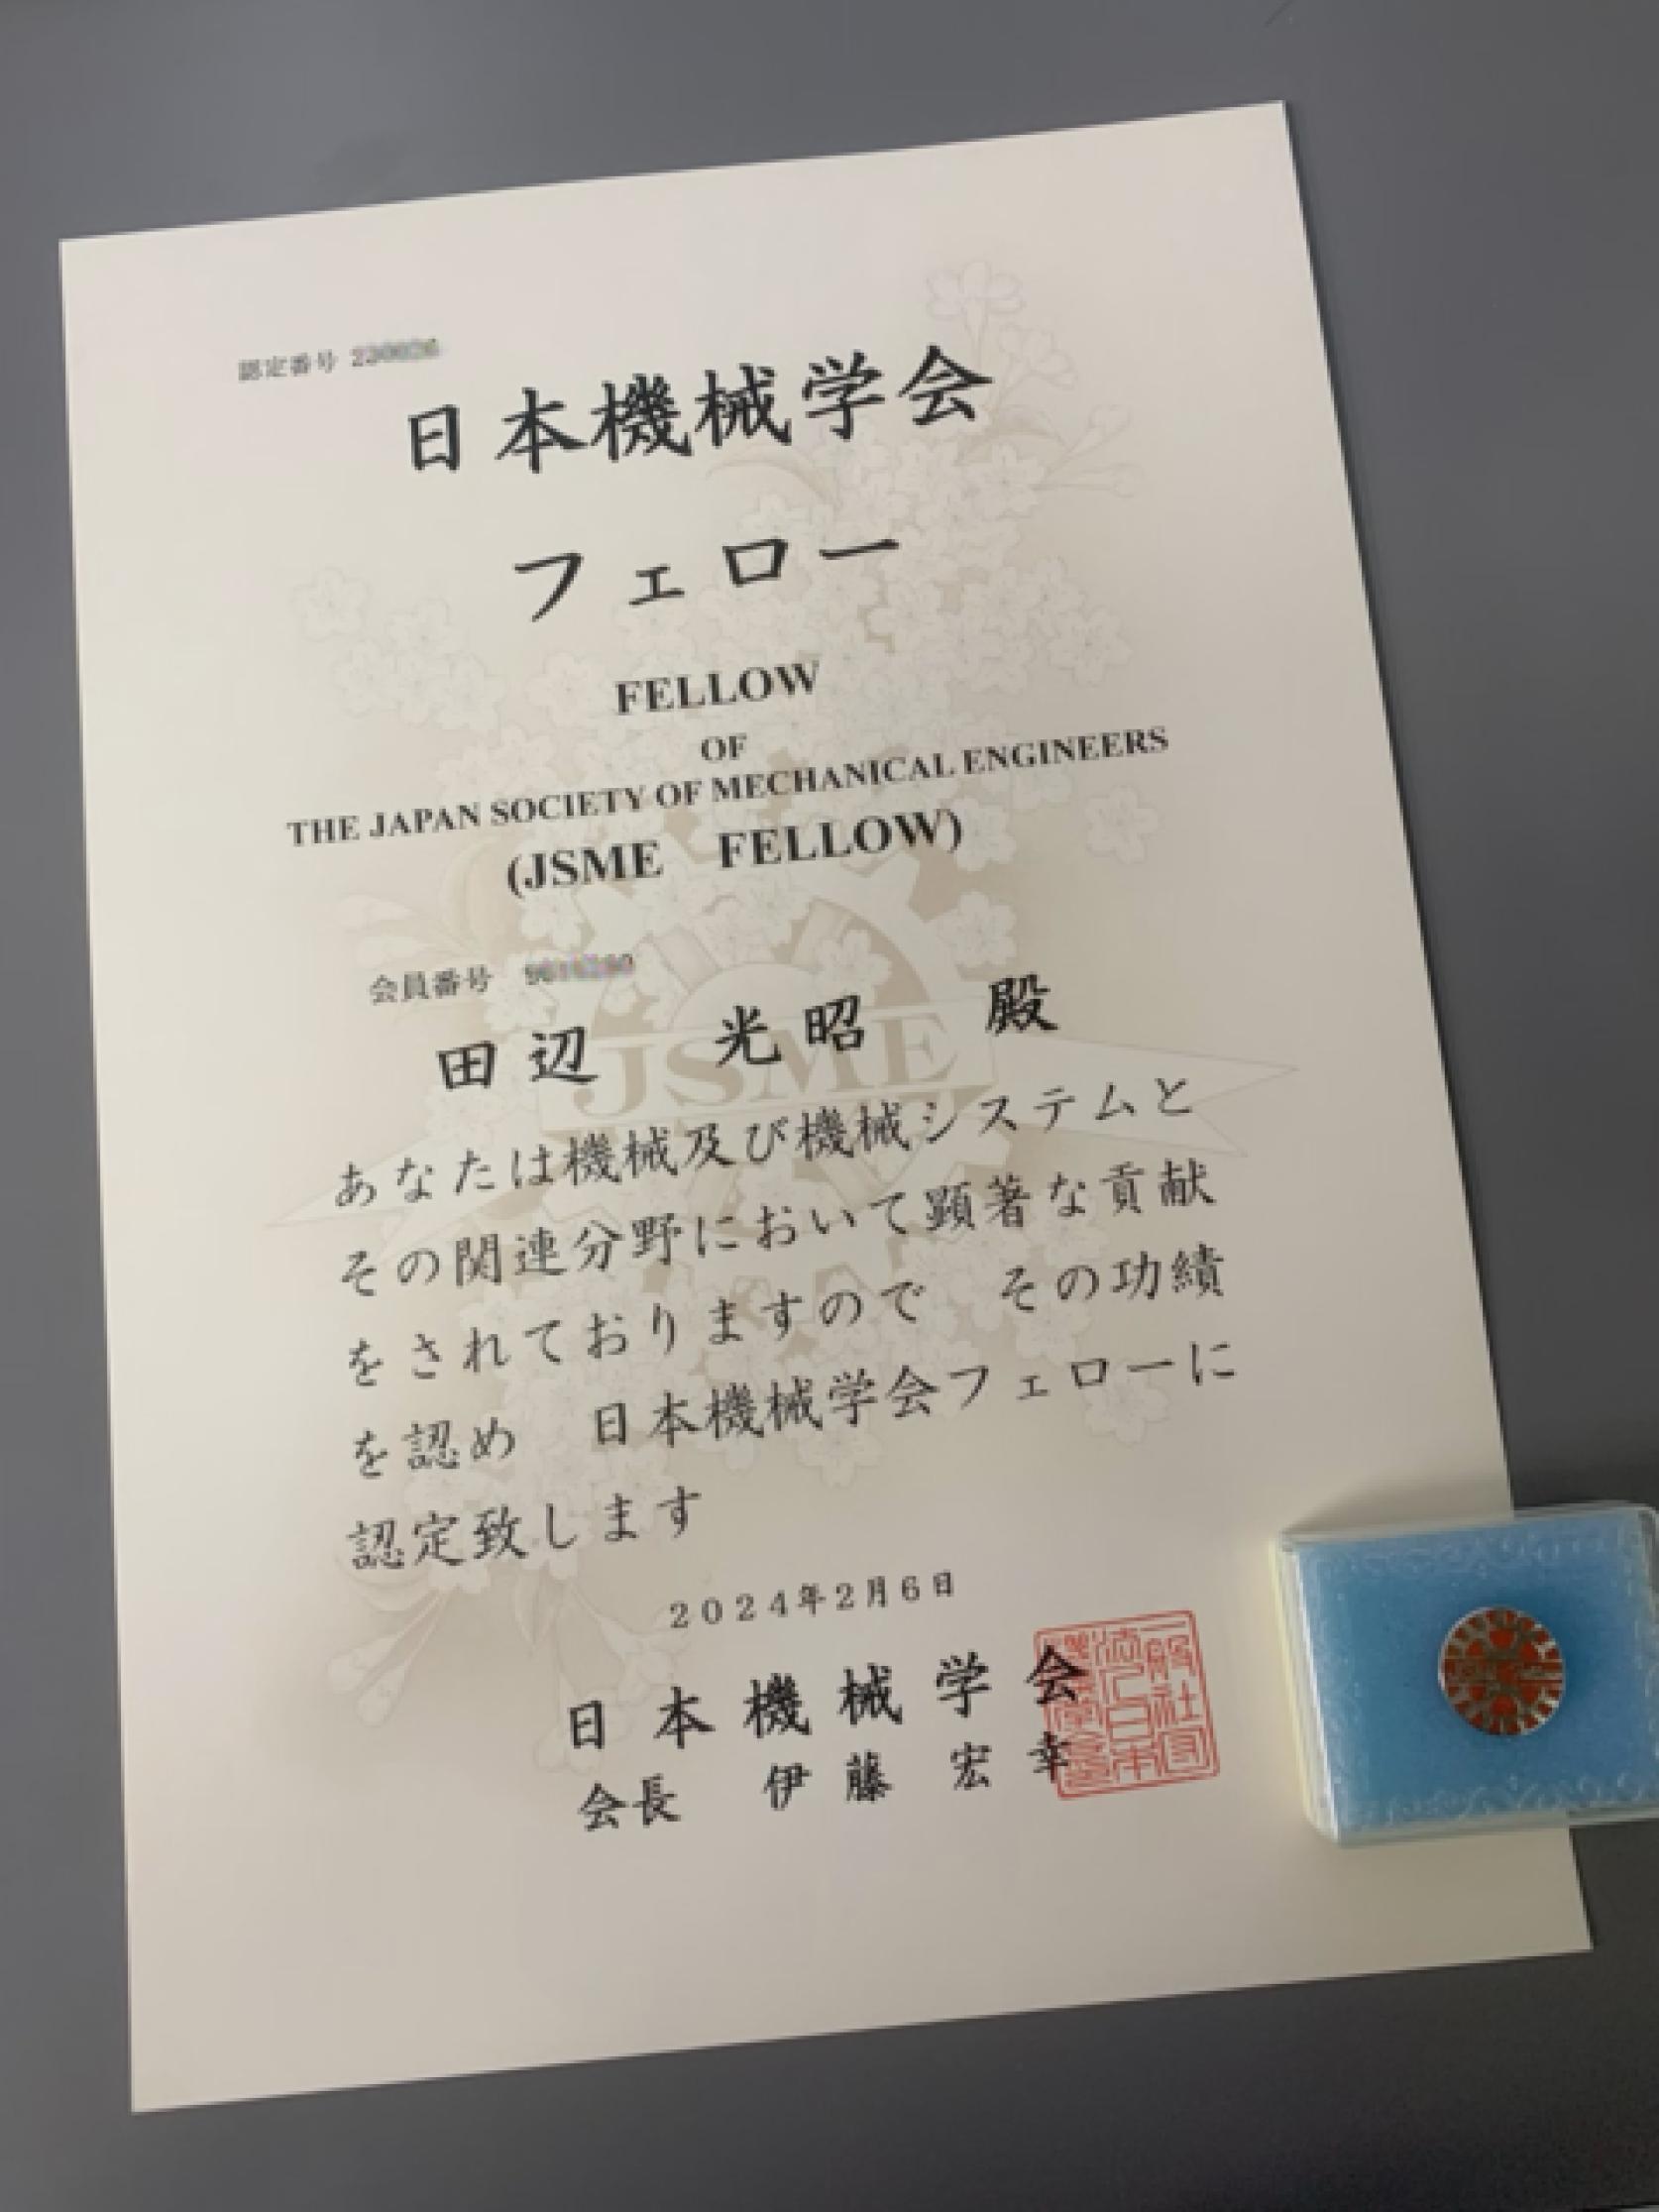 航空宇宙工学科 田辺光昭教授が「日本機械学会フェロー」に認定されました。